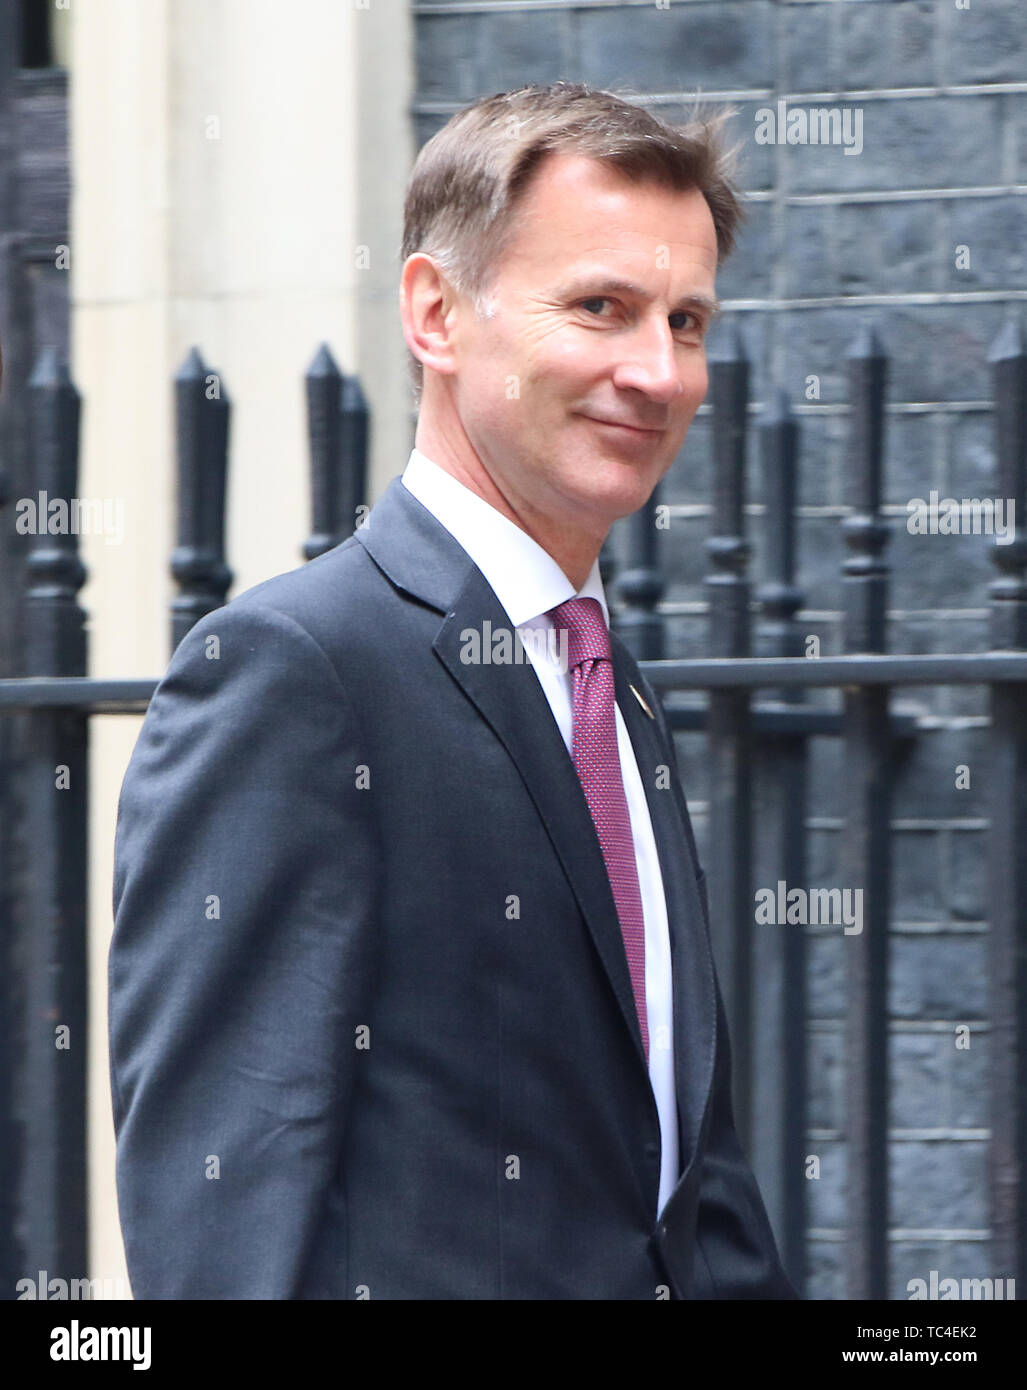 Jeremy Hunt, Stati Uniti d'America visita presidenziale per il Regno Unito, Downing Street, Londra, Regno Unito, 04 giugno 2019, Foto di Richard Goldschmidt Foto Stock